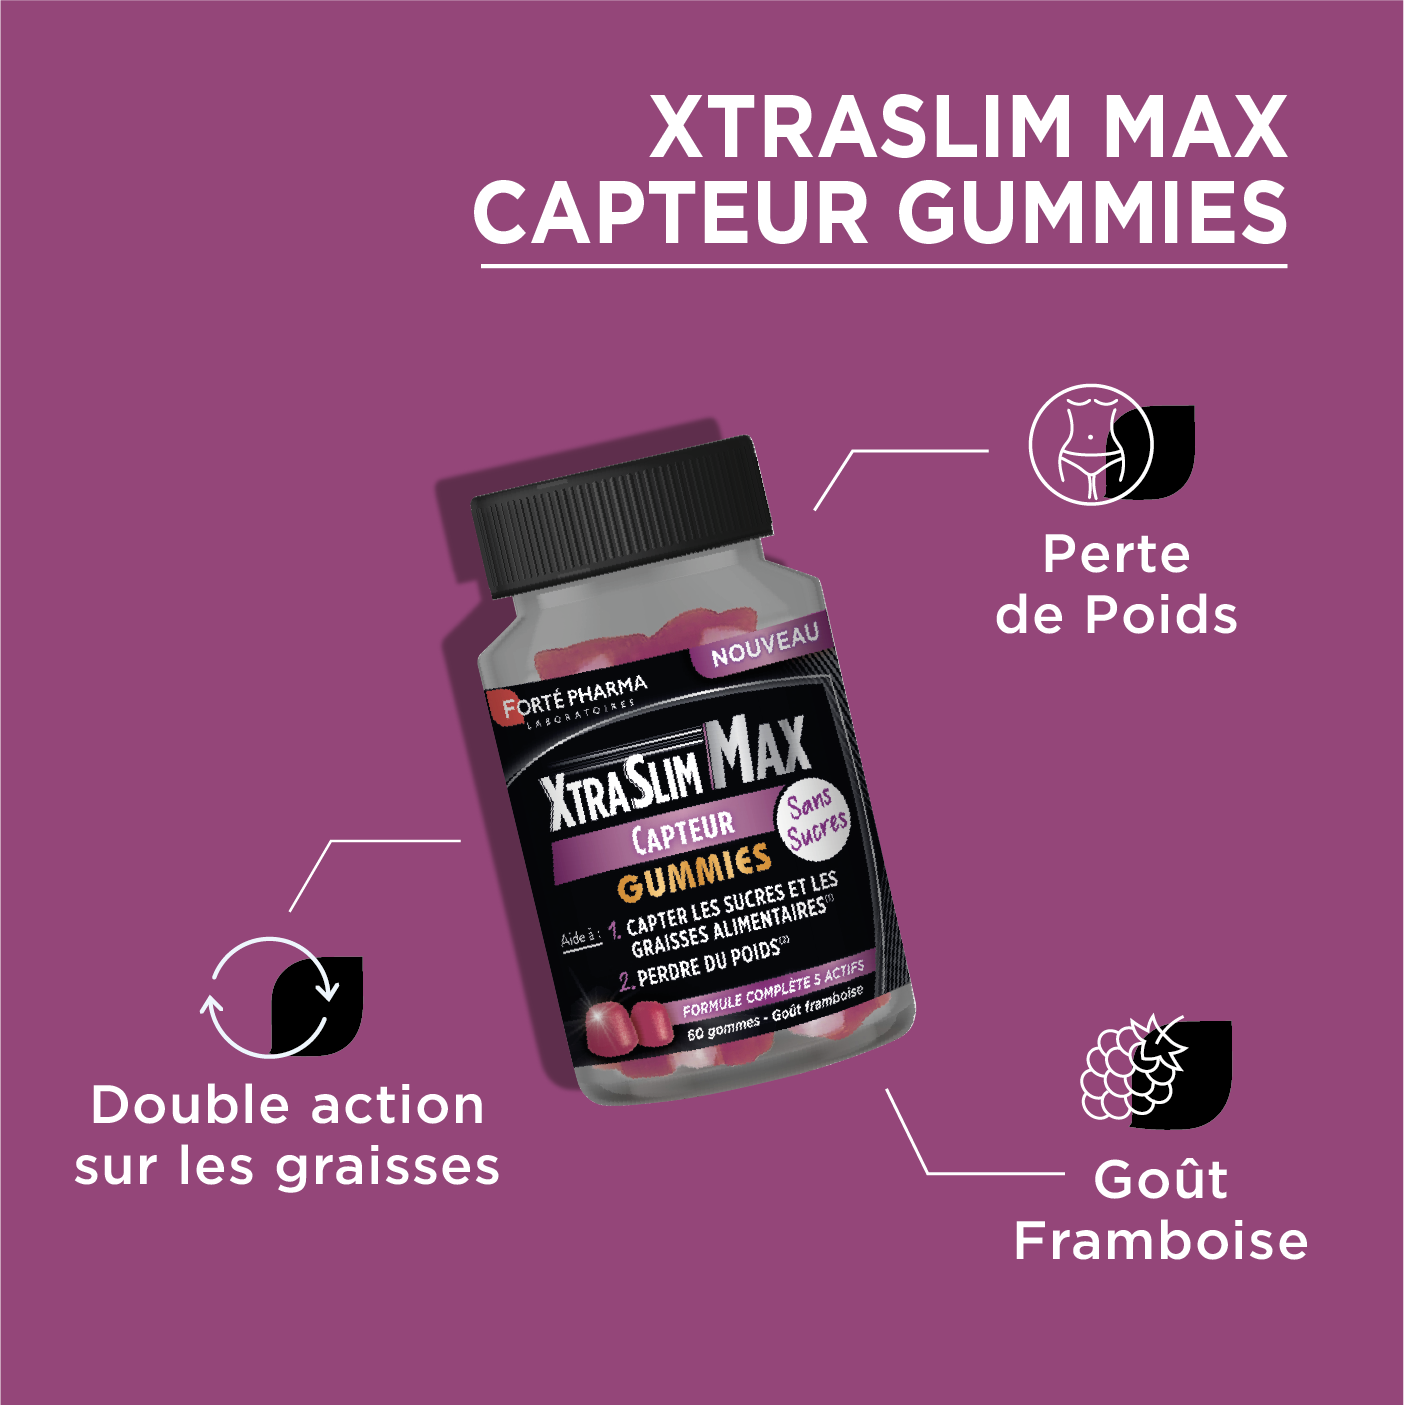 XtraSlim Max Capteur Gummies capteur de graisses bénéfices